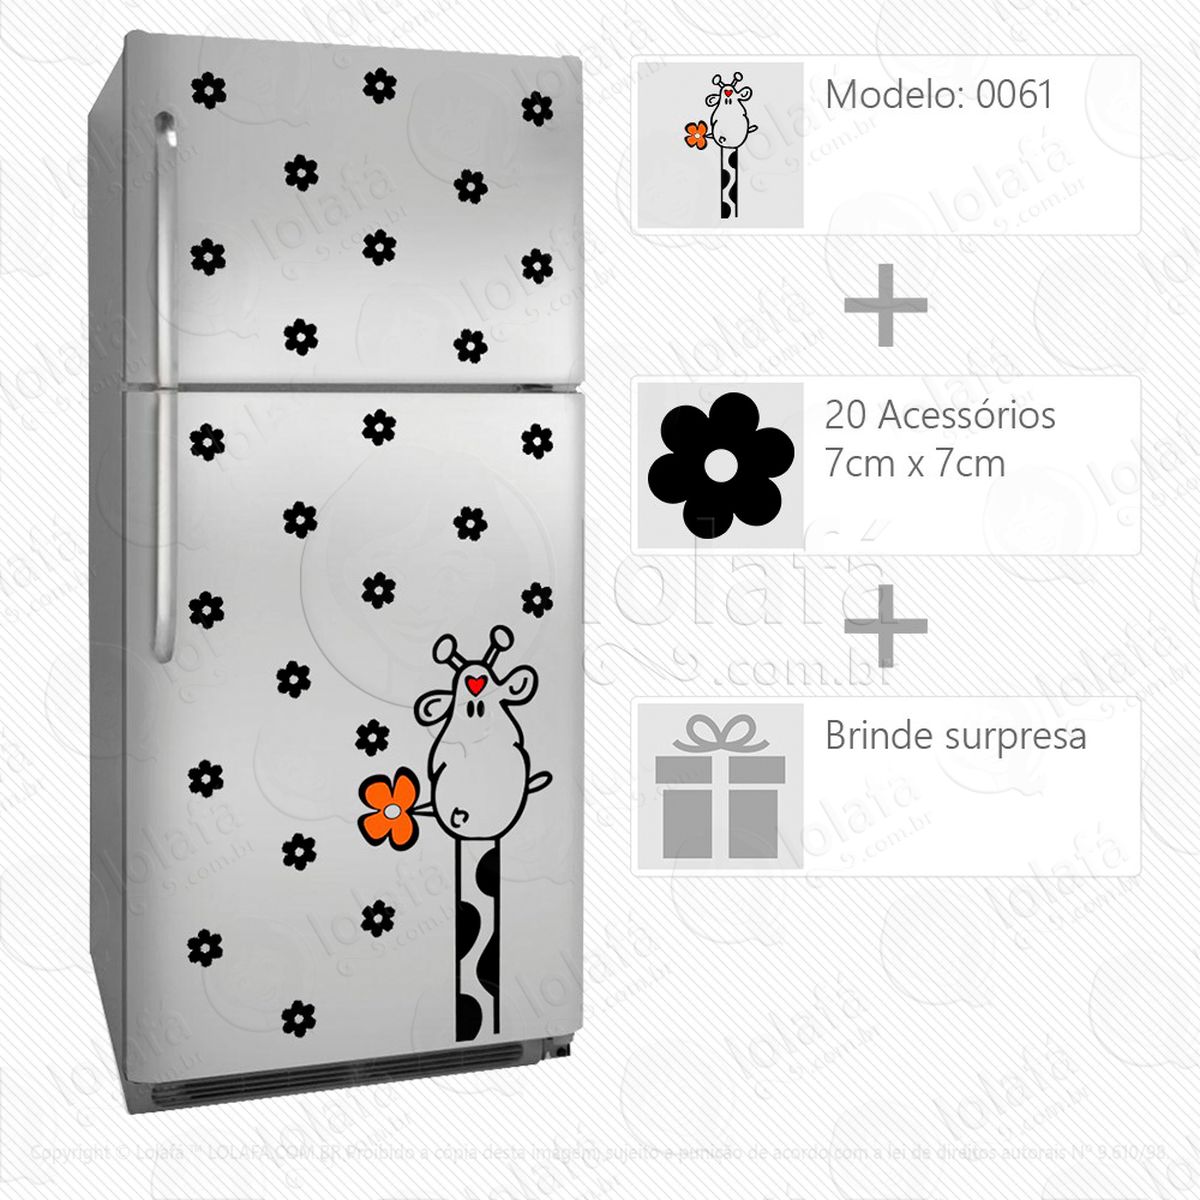 girafa adesivo para geladeira e frigobar - mod:61